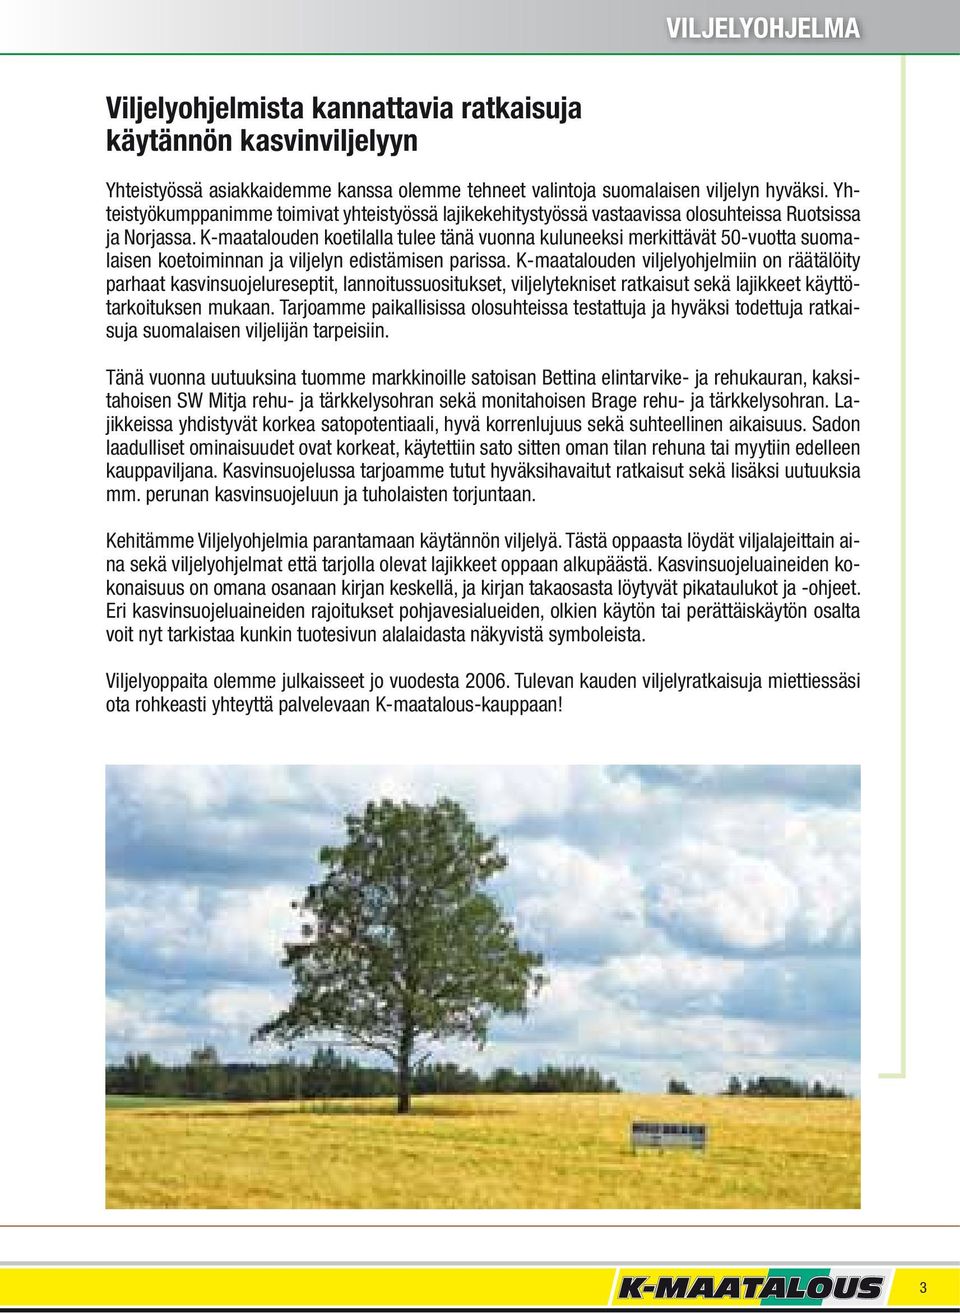 K-maatalouden koetilalla tulee tänä vuonna kuluneeksi merkittävät 50-vuotta suomalaisen koetoiminnan ja viljelyn edistämisen parissa.